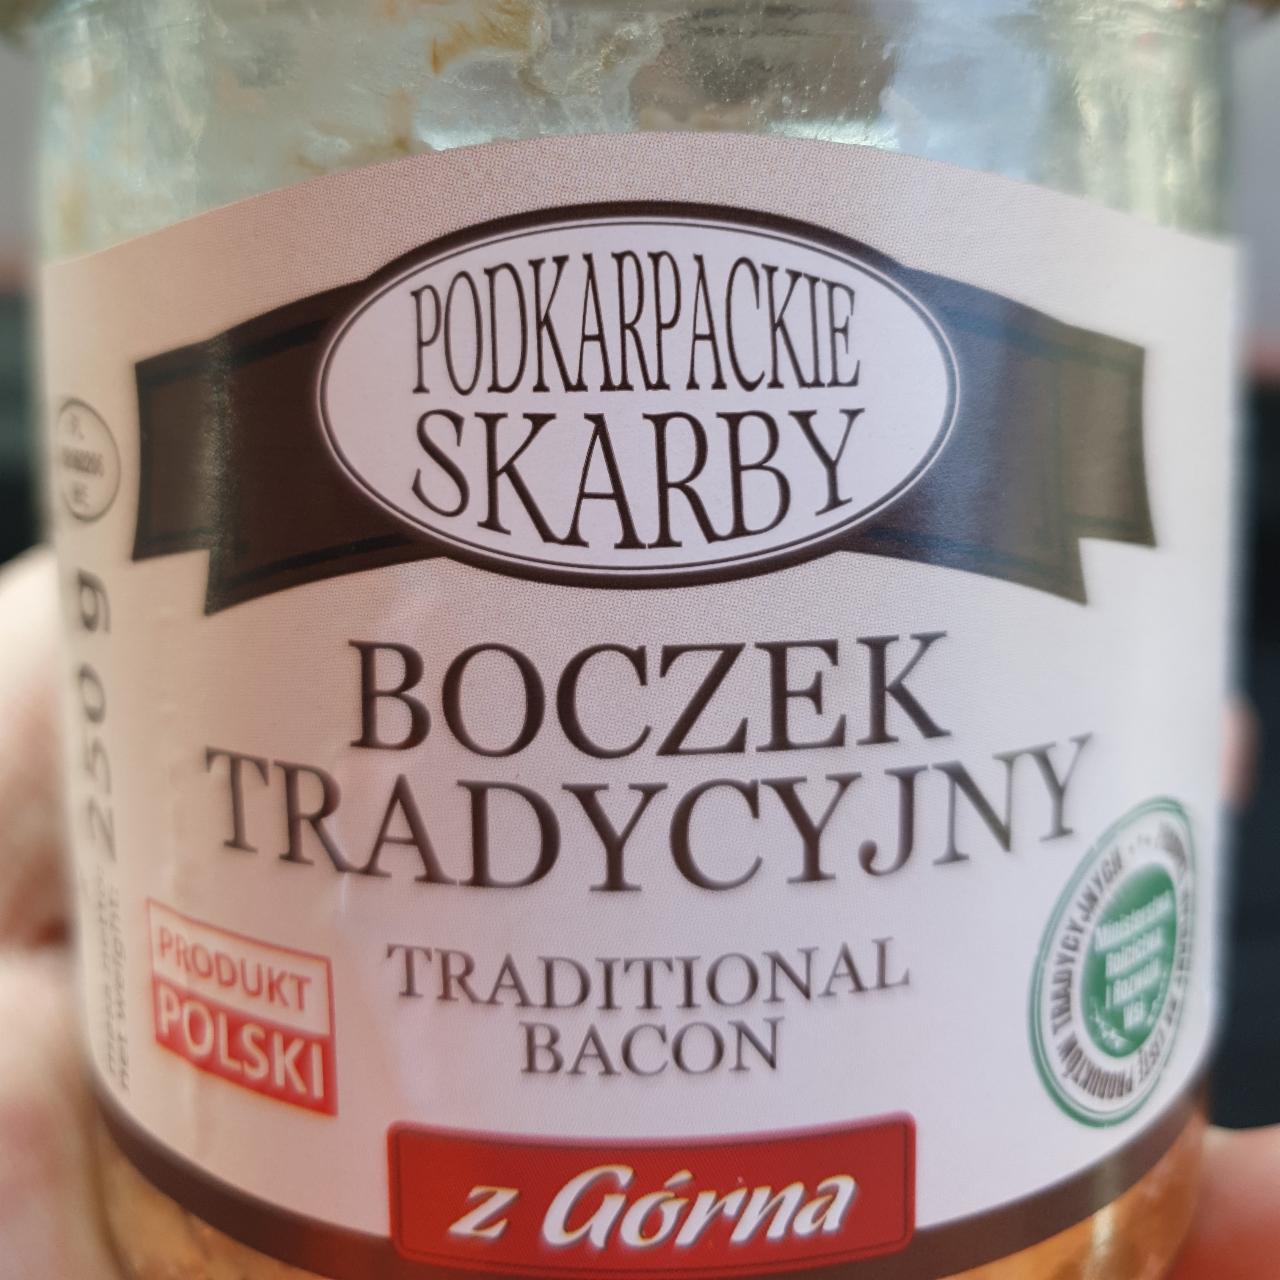 Zdjęcia - Boczek tradycyjny Podkarpackie skarby